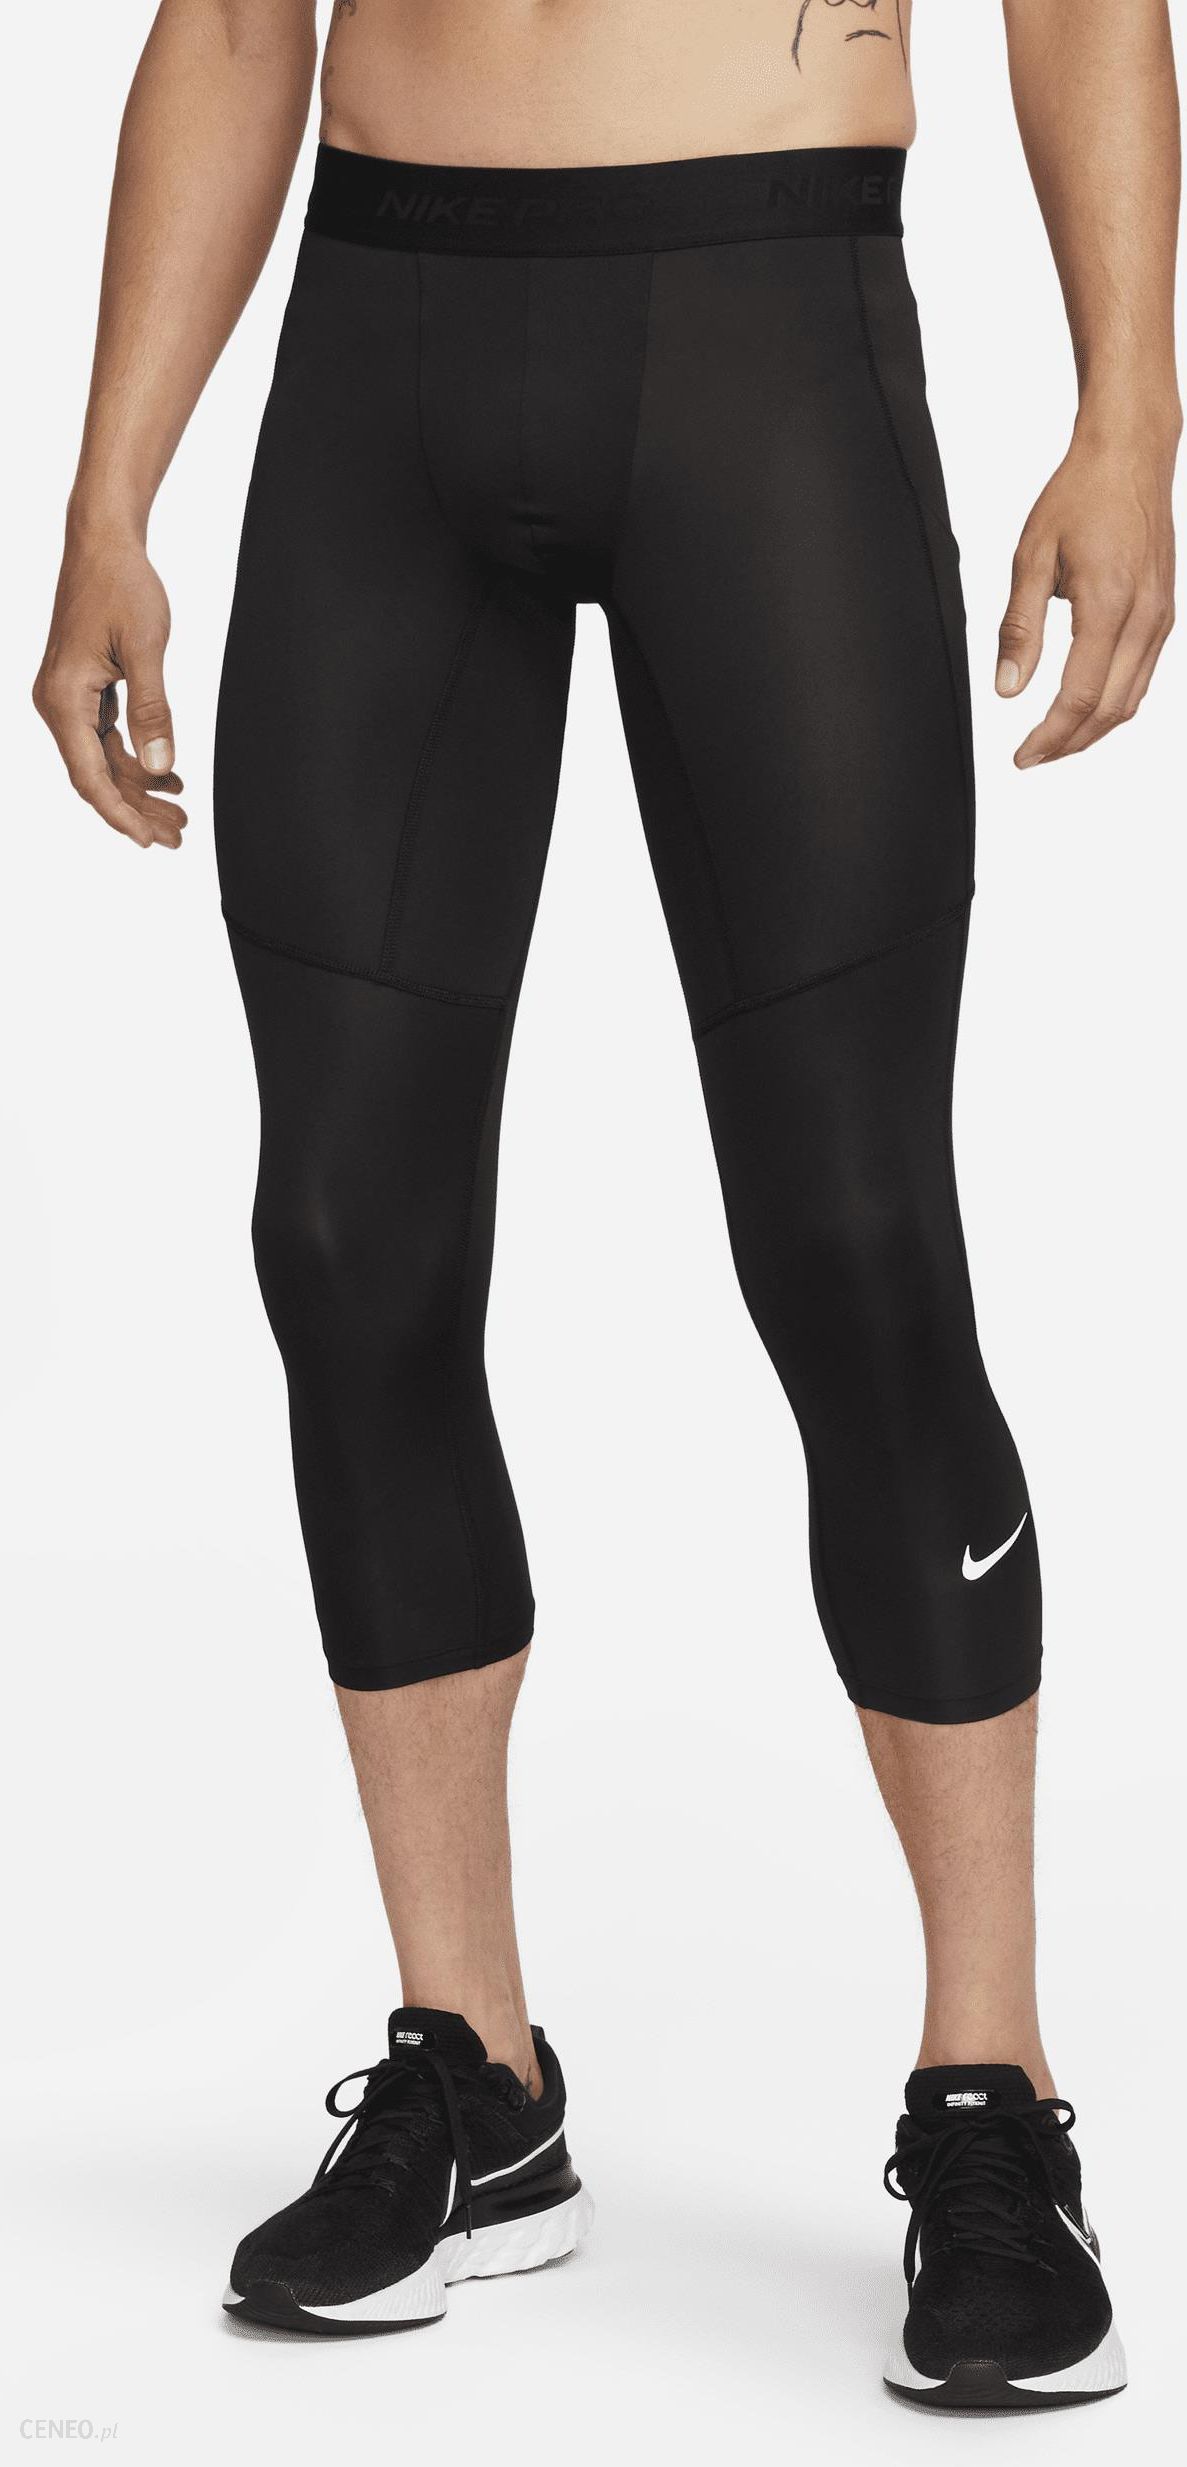 Nike Pro Legginsy Spodnie sport fitness czarne L - Ceny i opinie